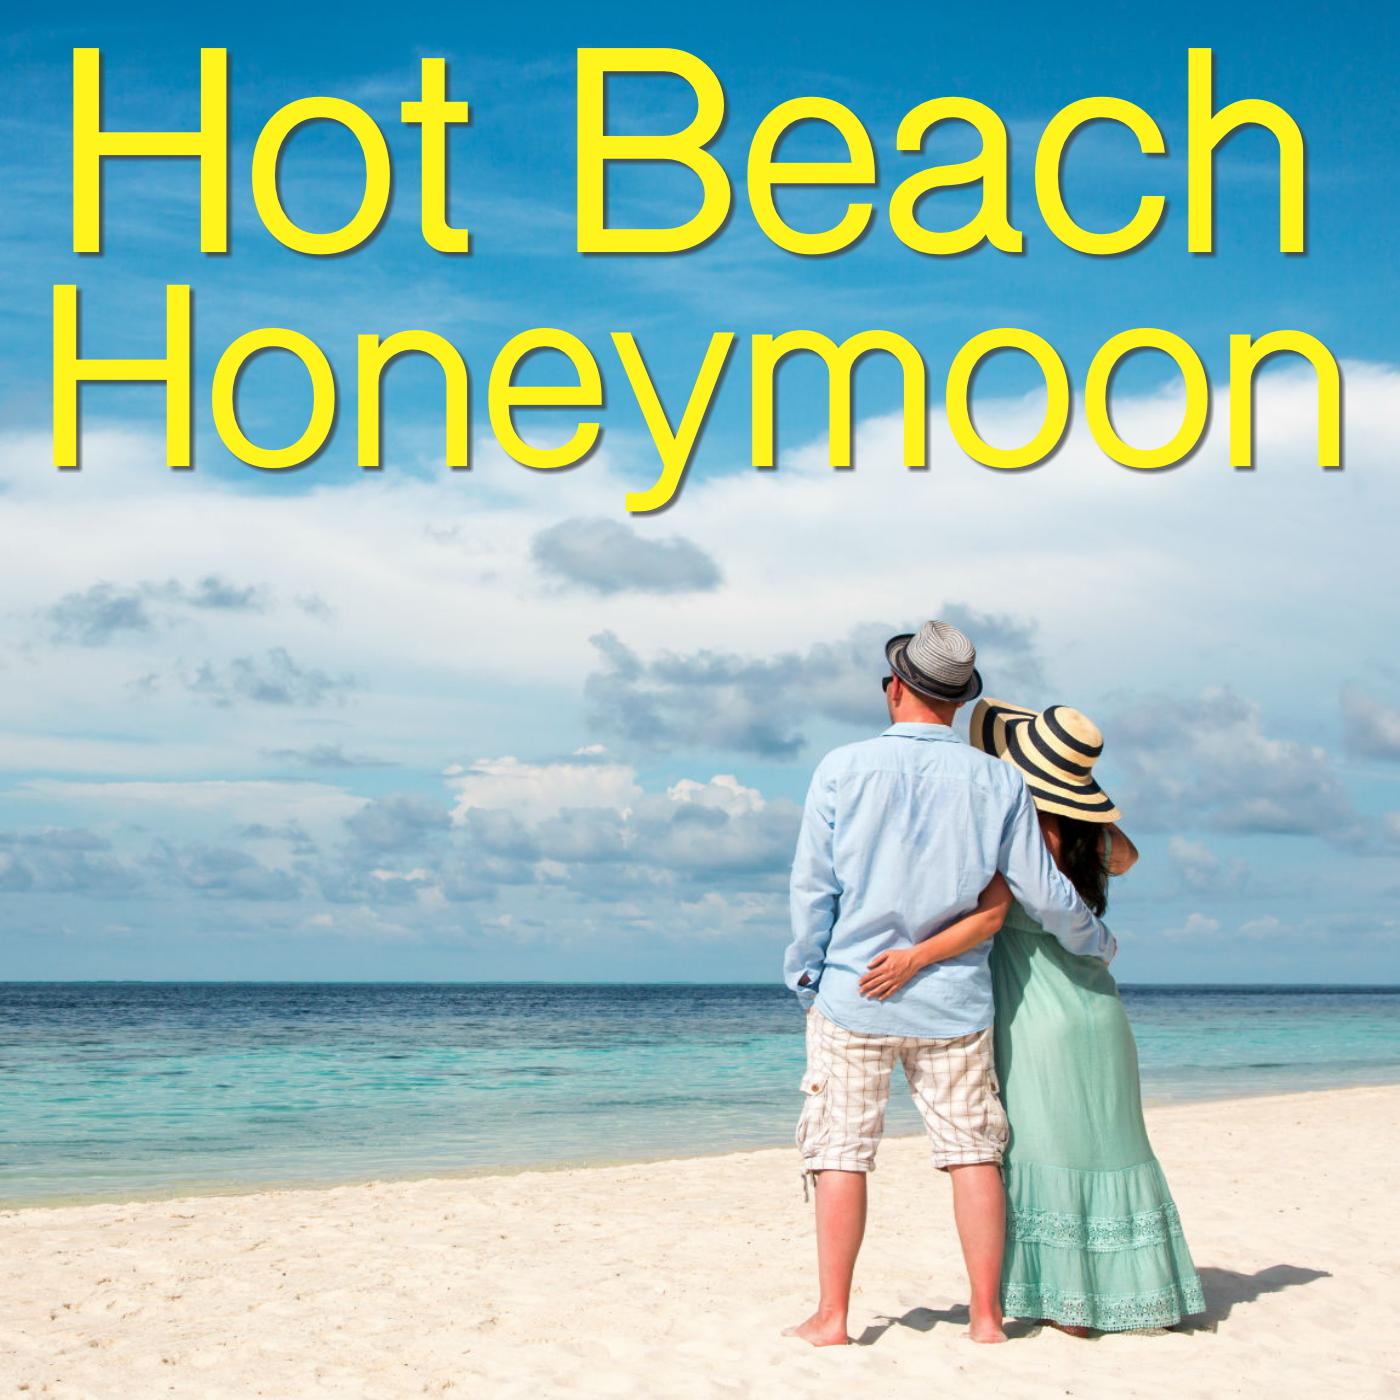 Hot Beach Honeymoon